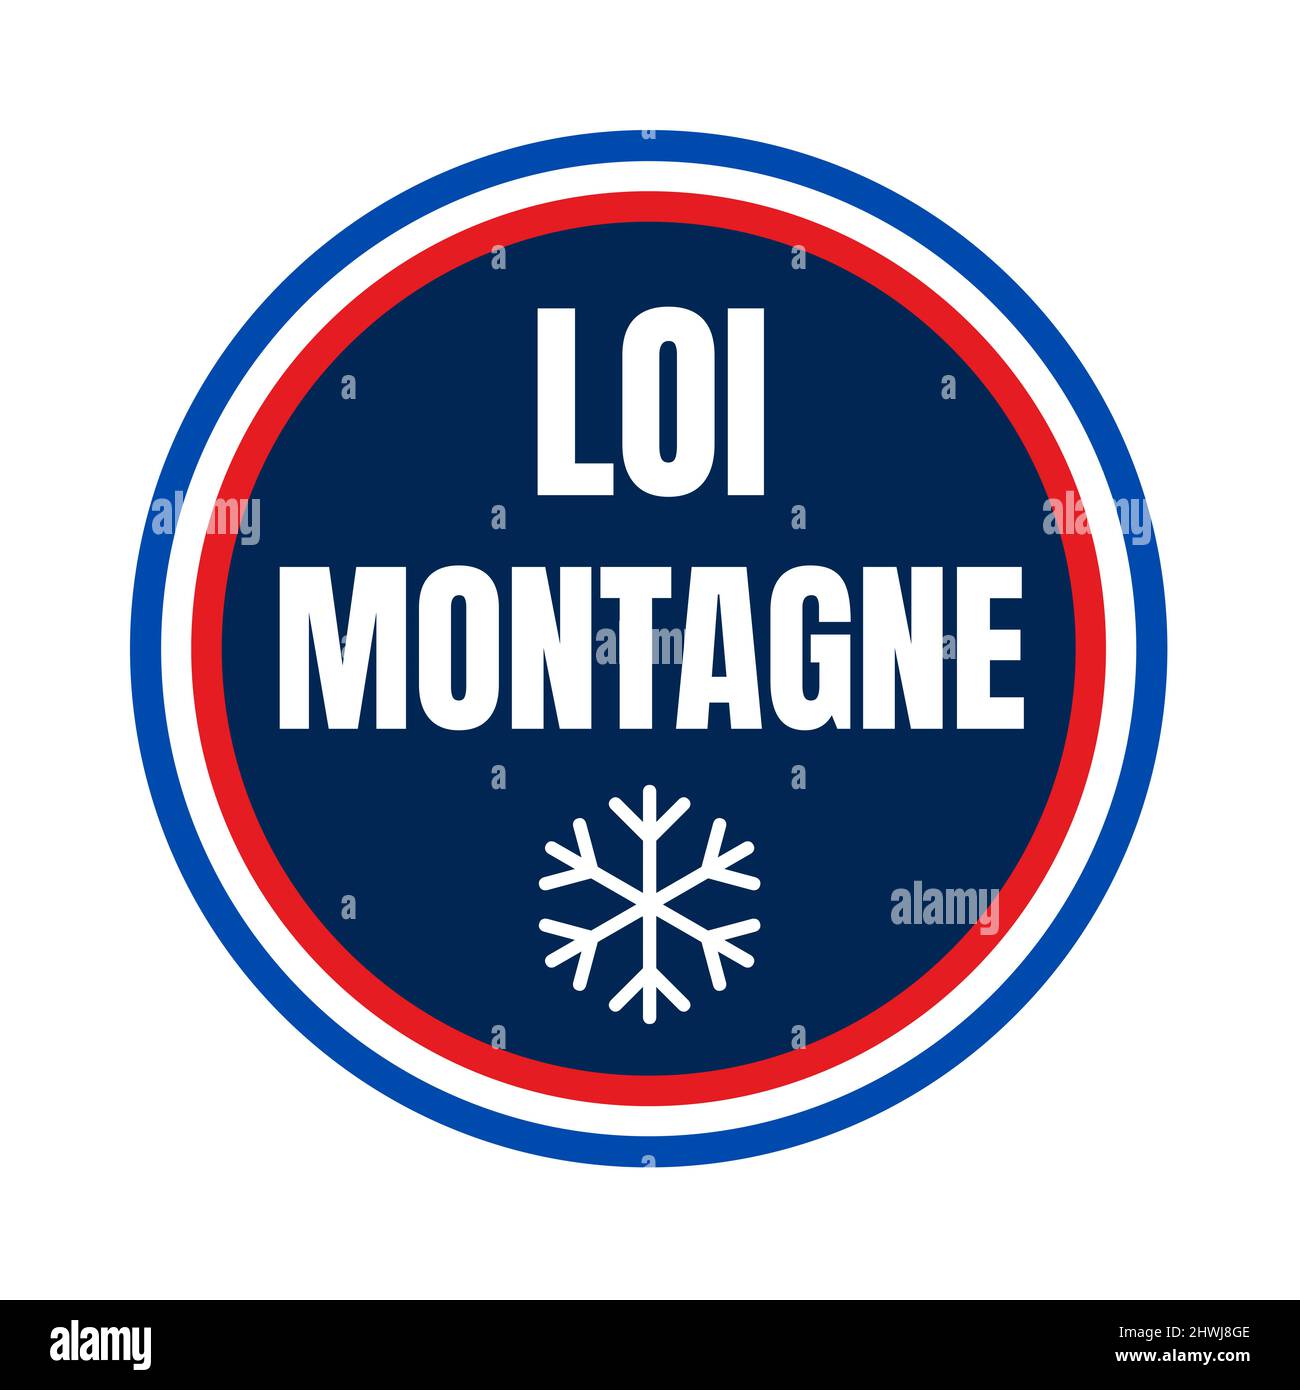 Symbole de loi de montagne en France appelé loi montagne en langue française Banque D'Images